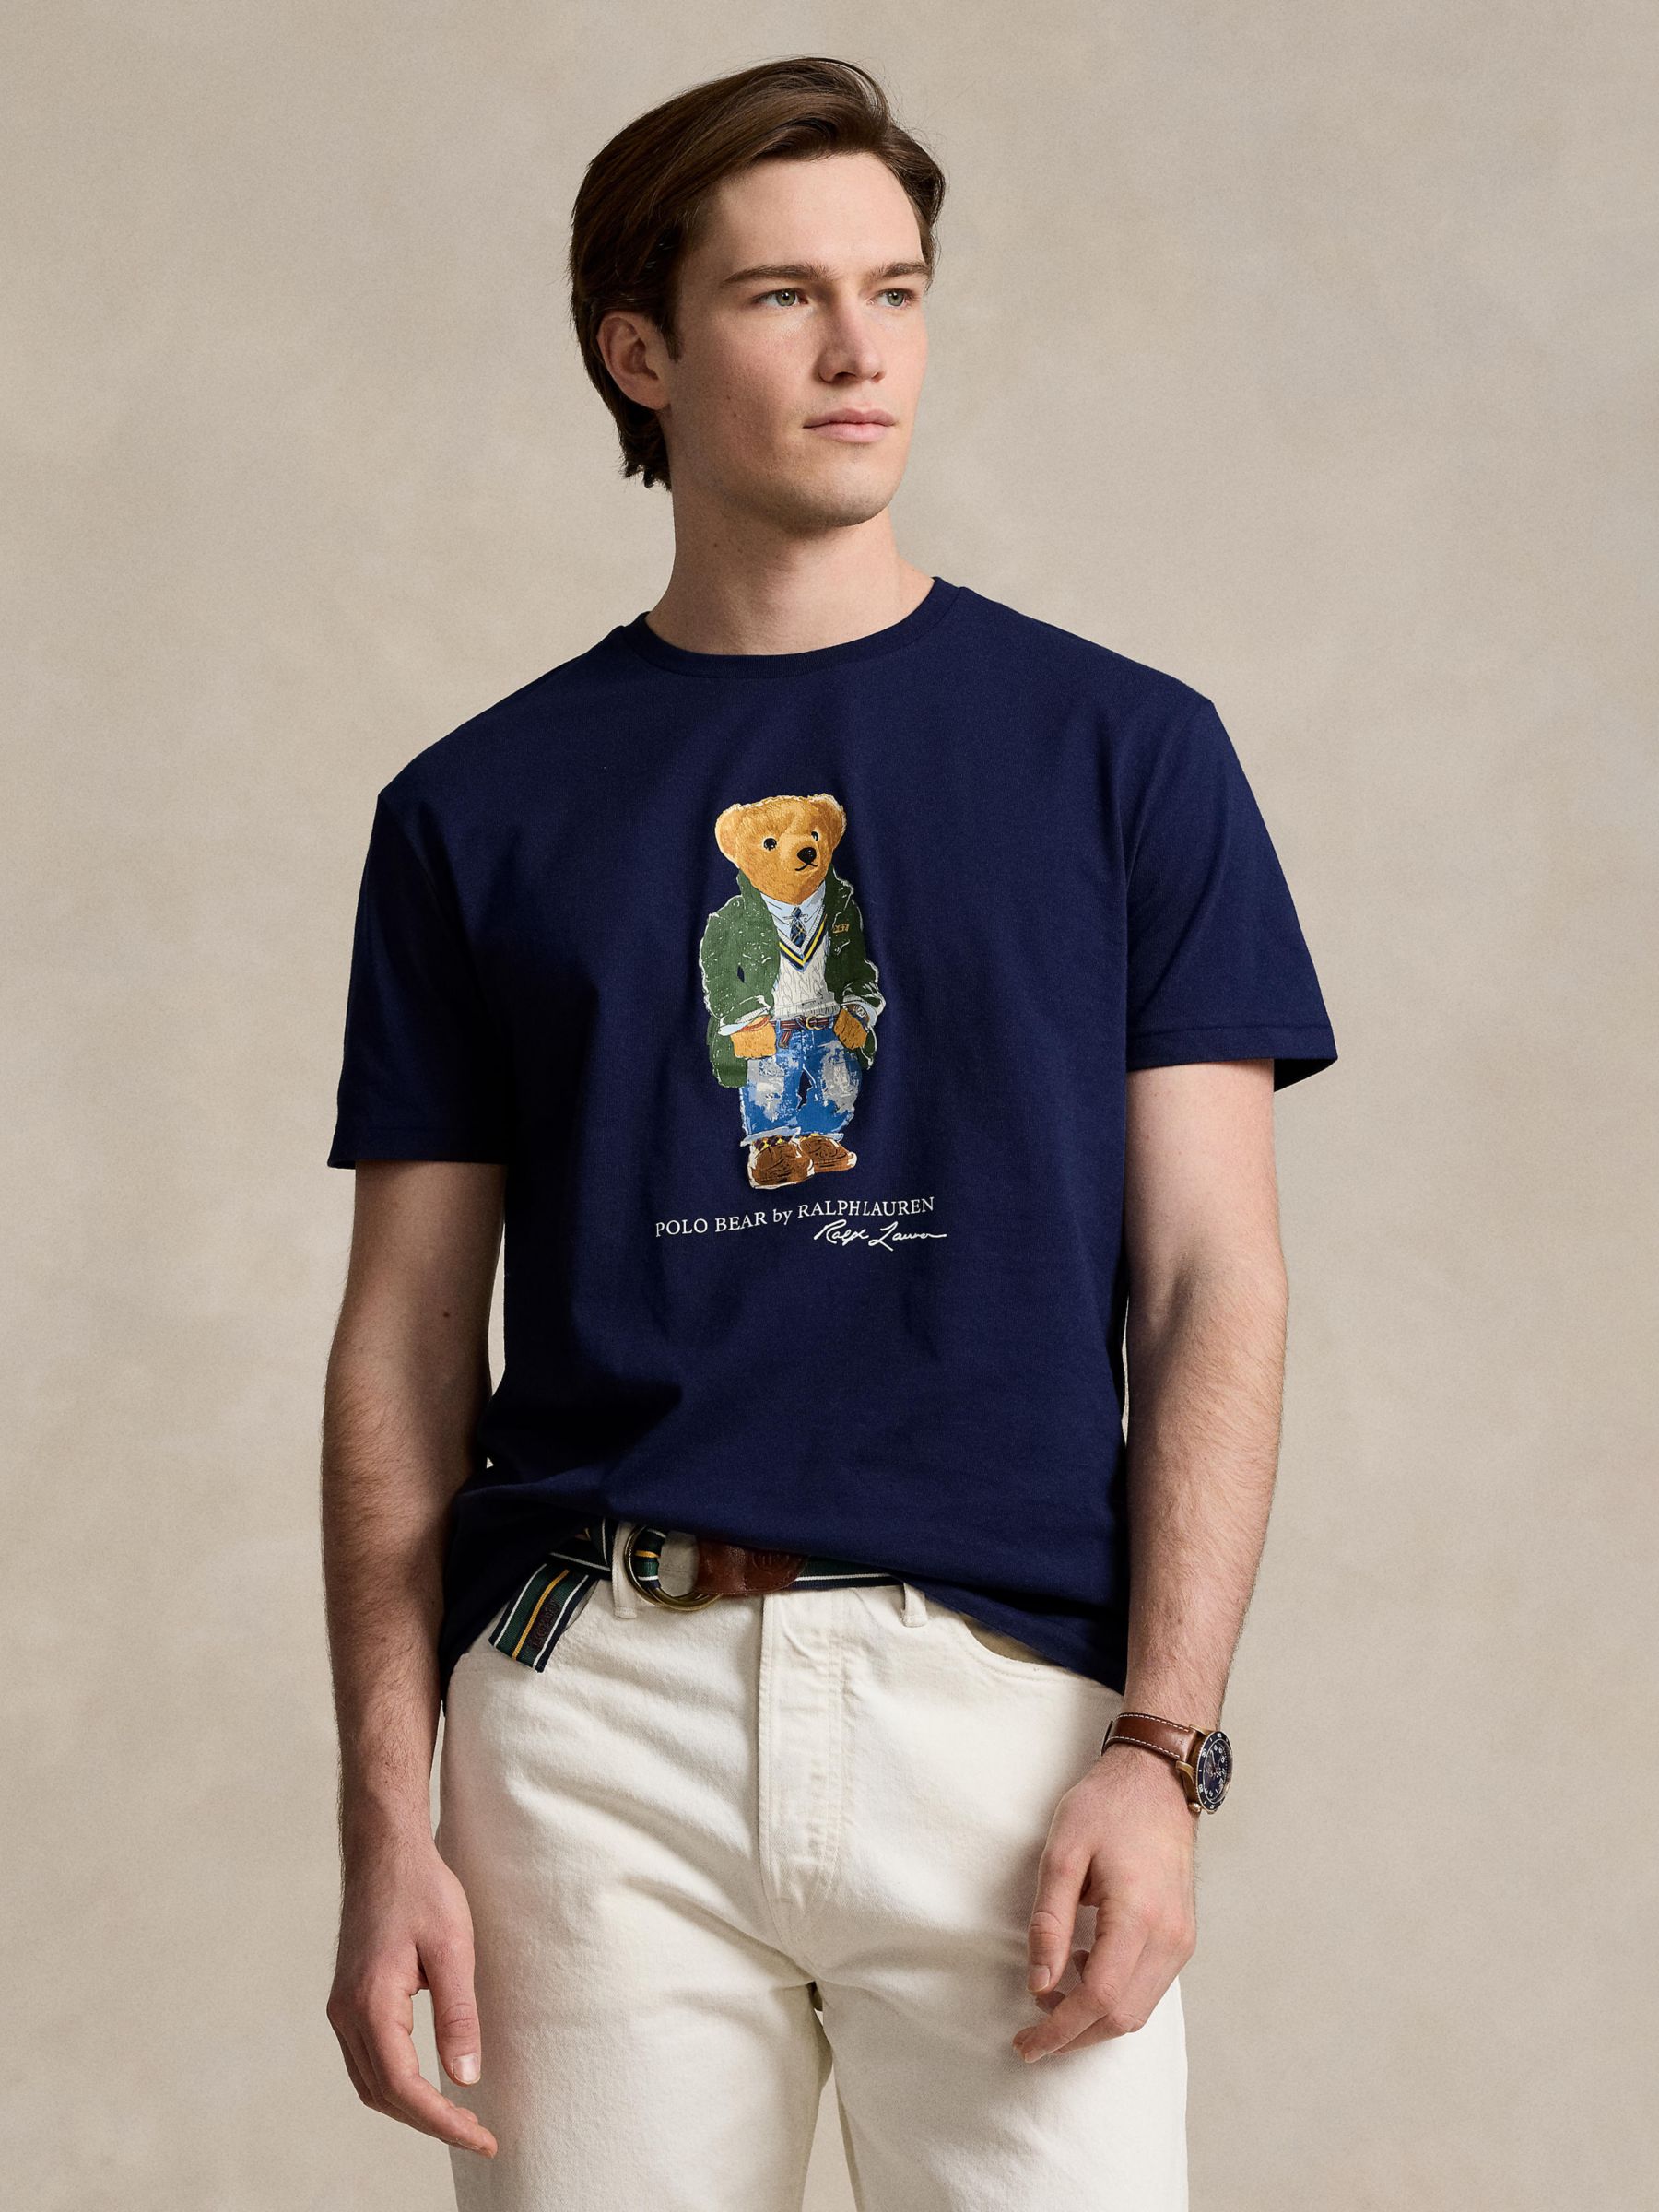 Ralph Lauren Classic Fit Polo Bear Jersey T-Shirt, Navy, S